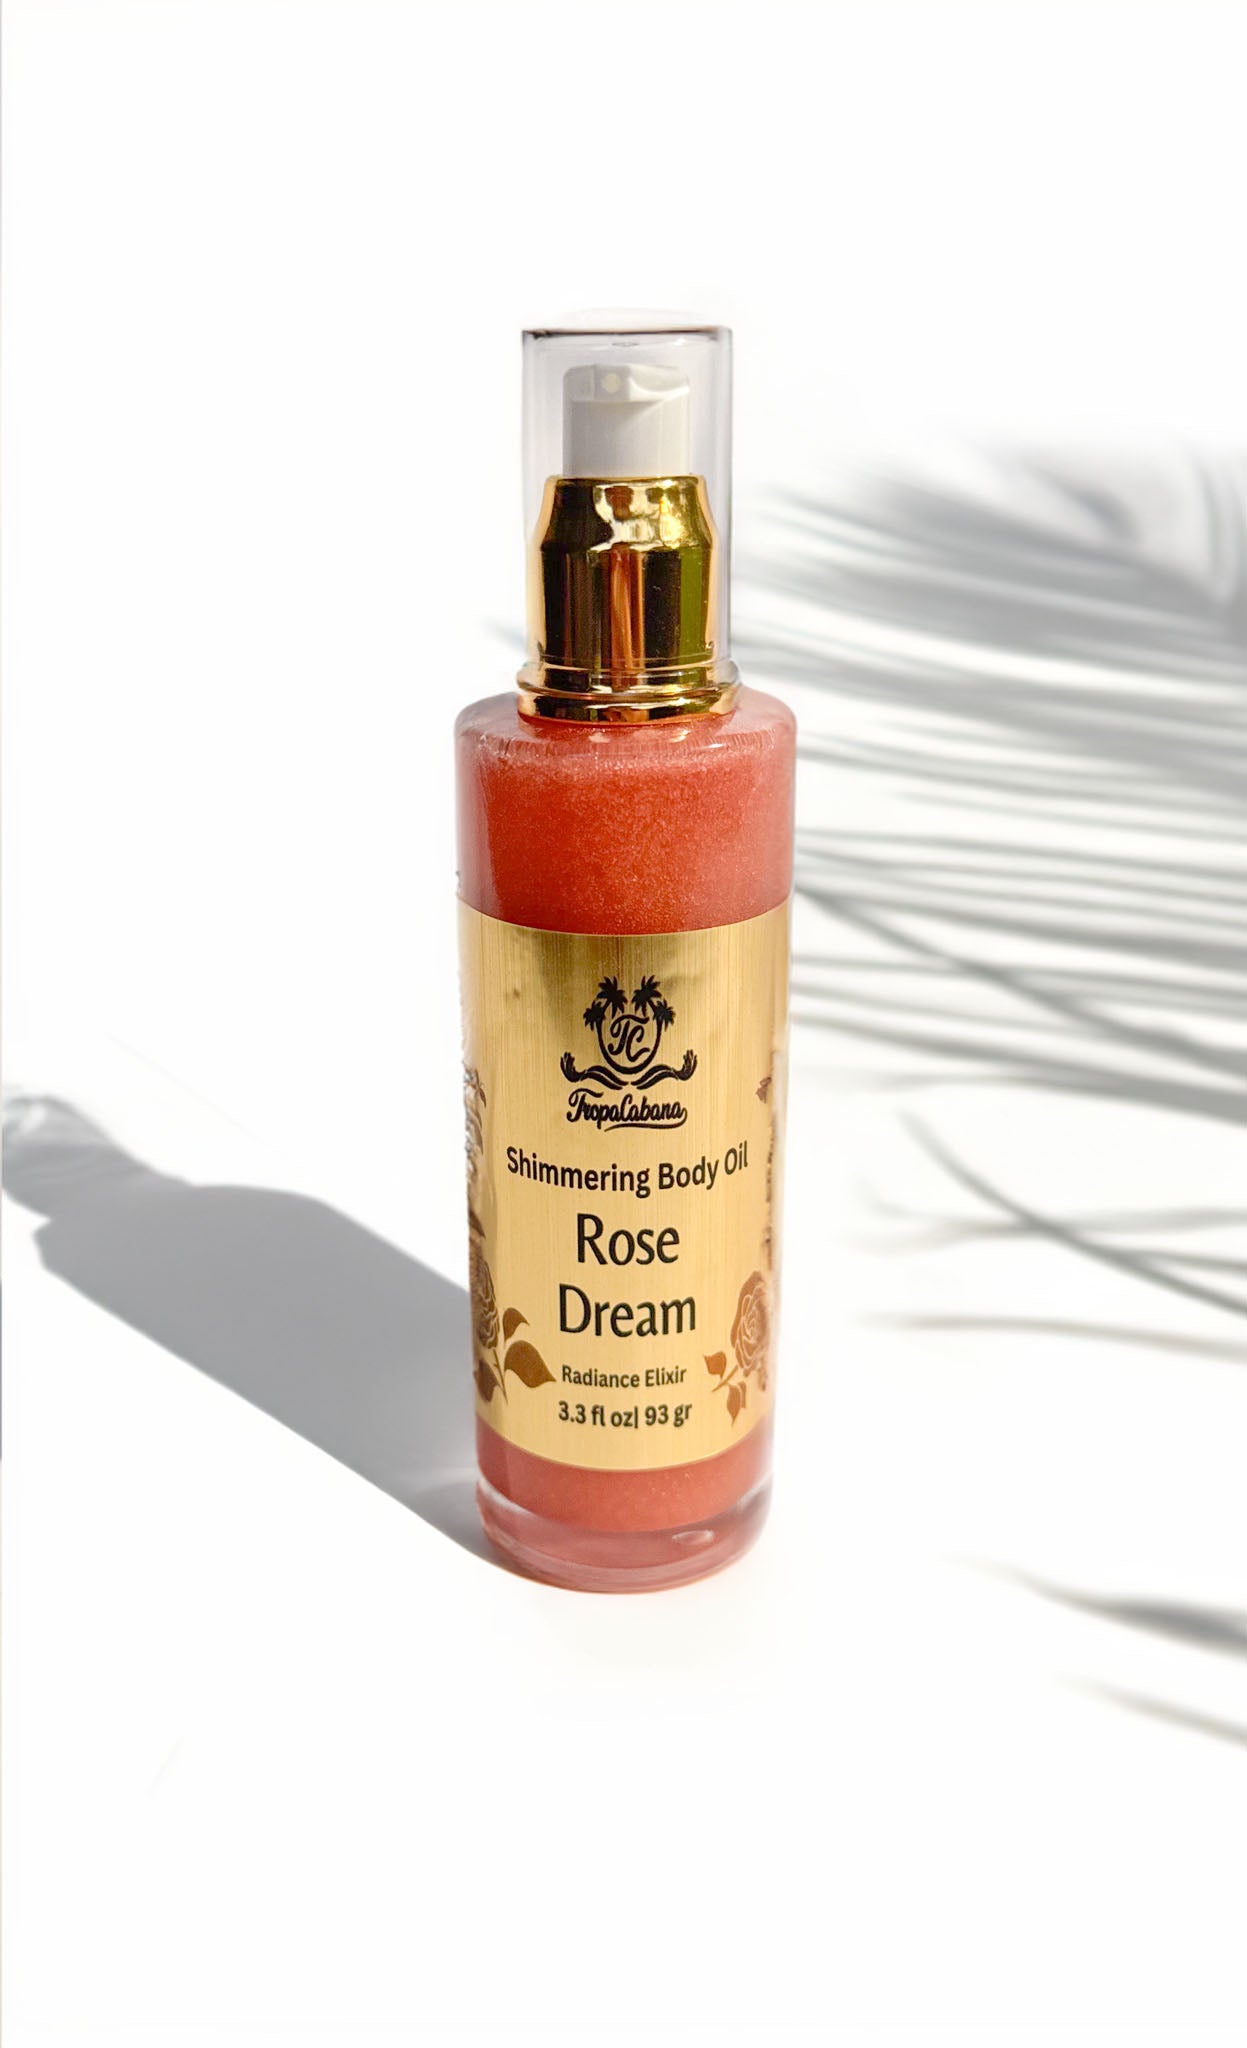 Rose Dream Shimmering Body Oil